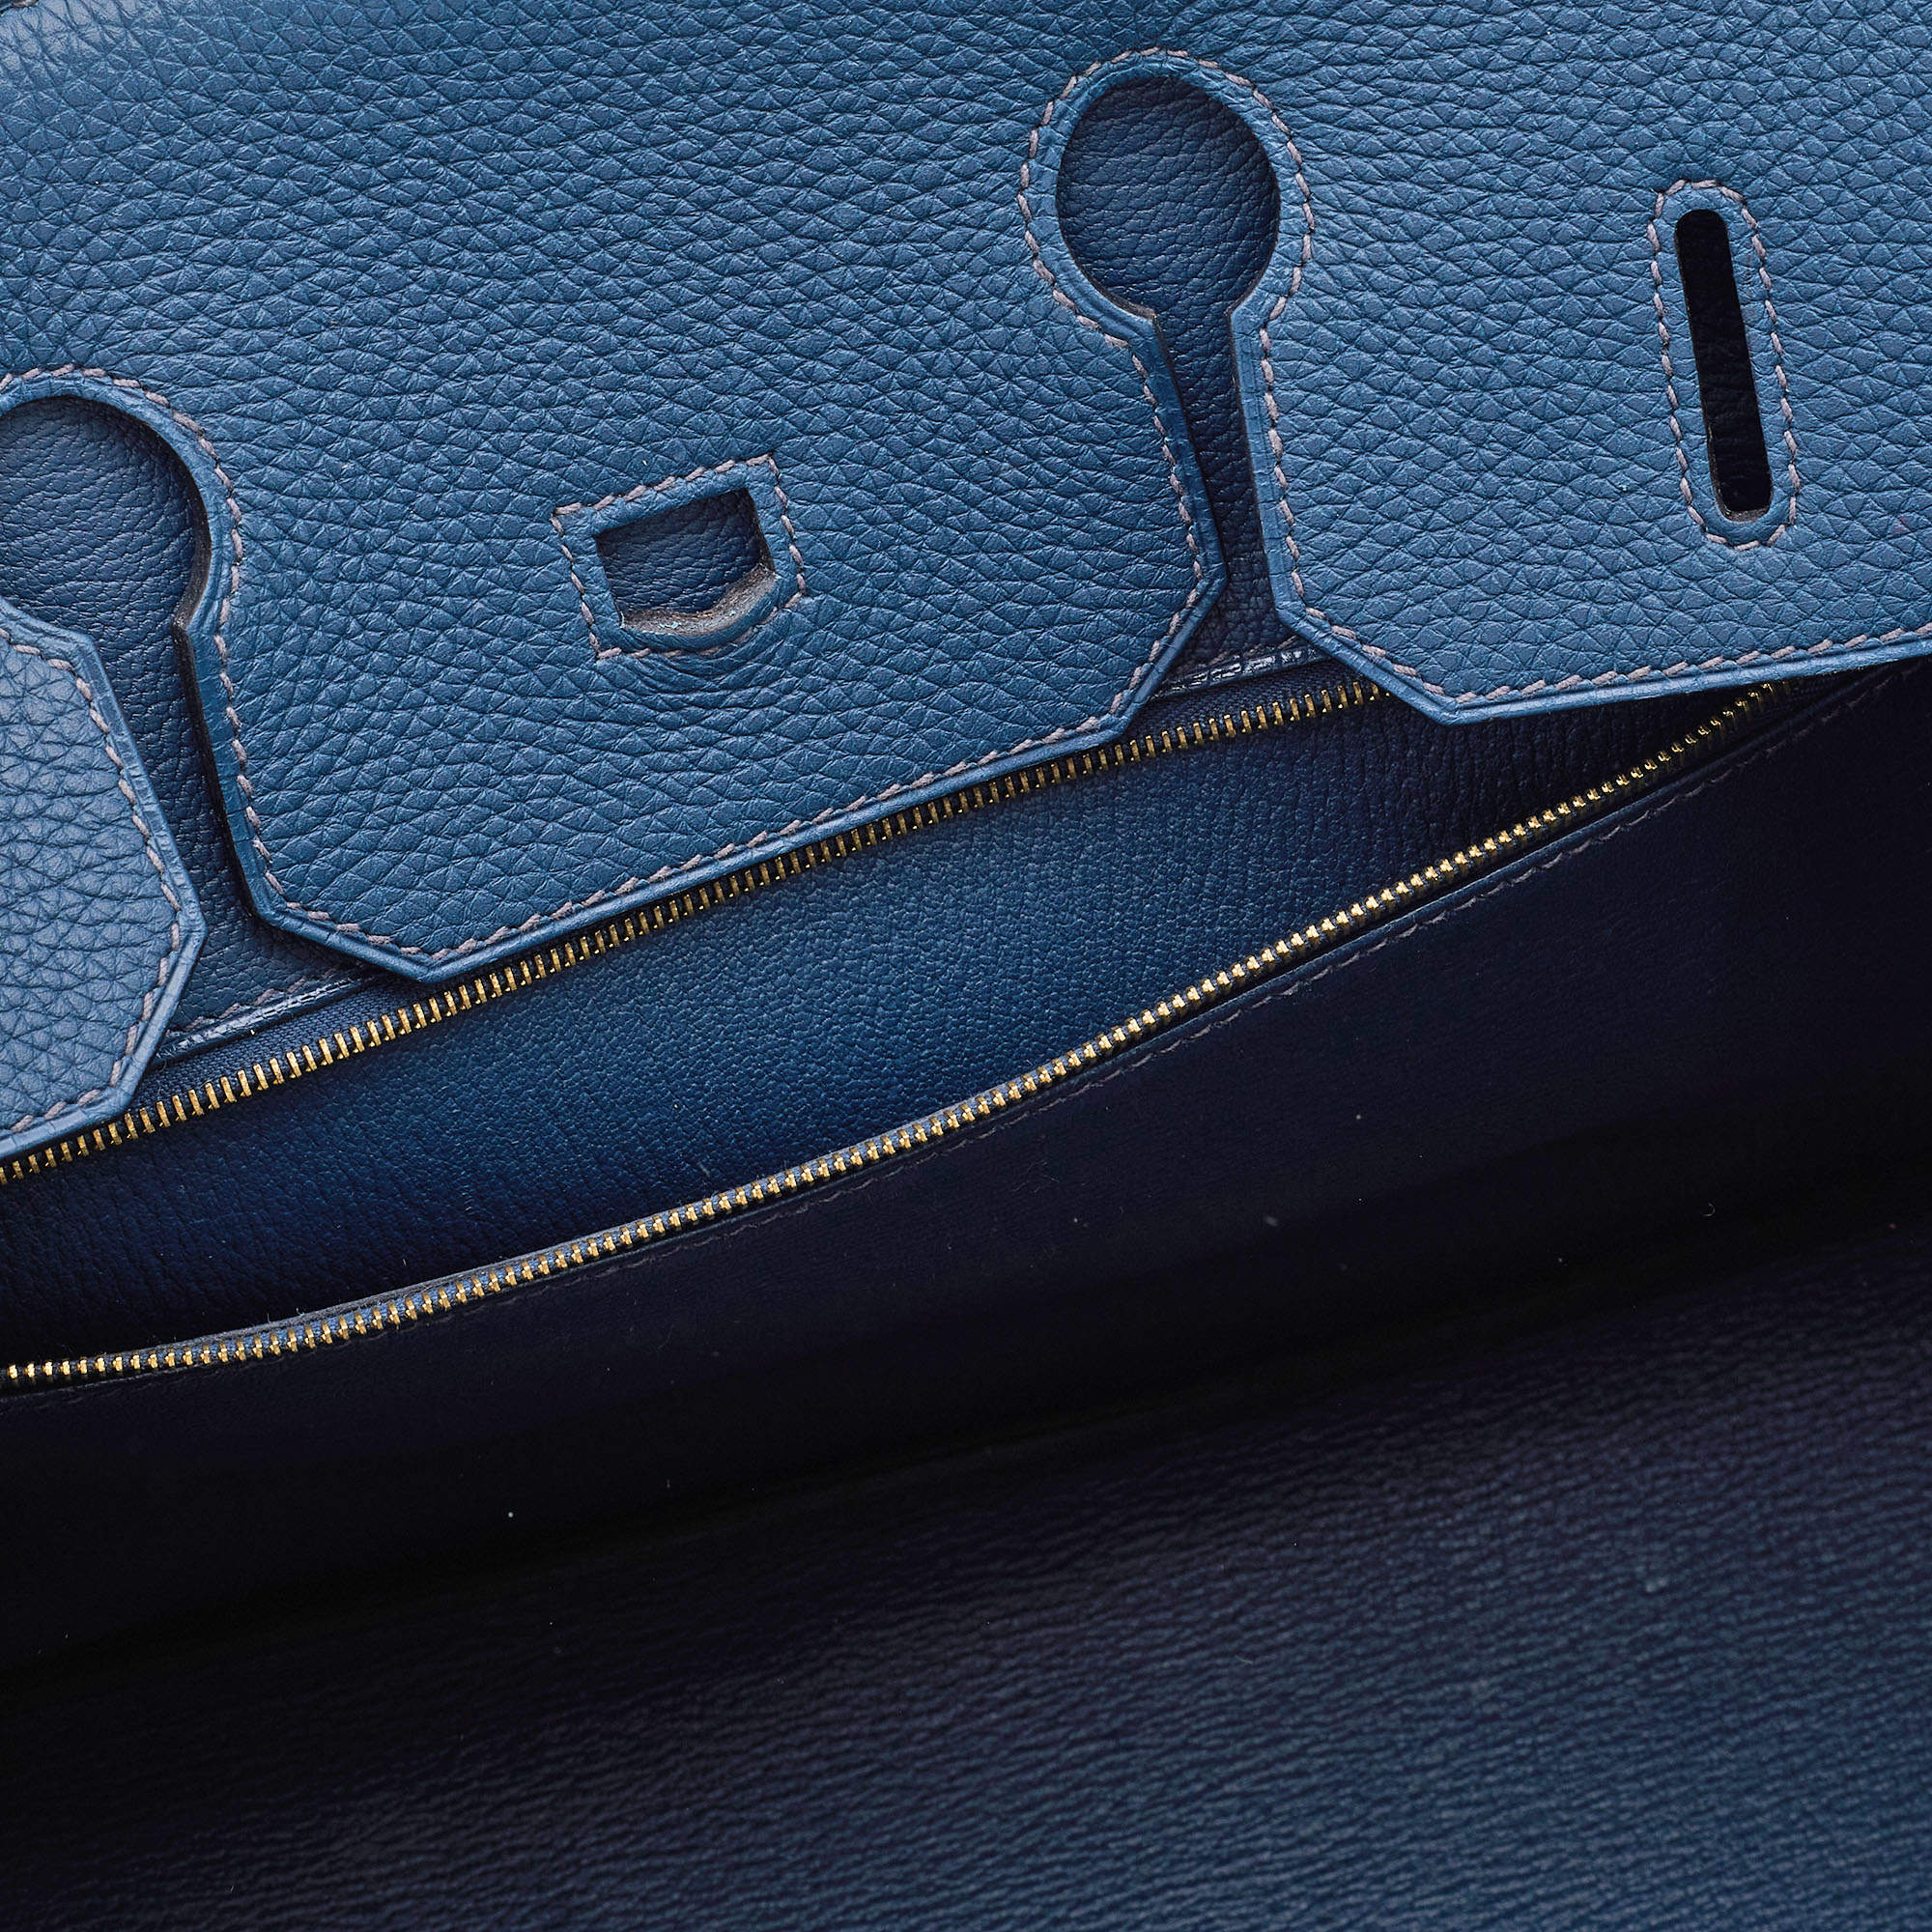 Hermès Bleu De Prusse Togo Leather Gold Plated Birkin 35 Bag